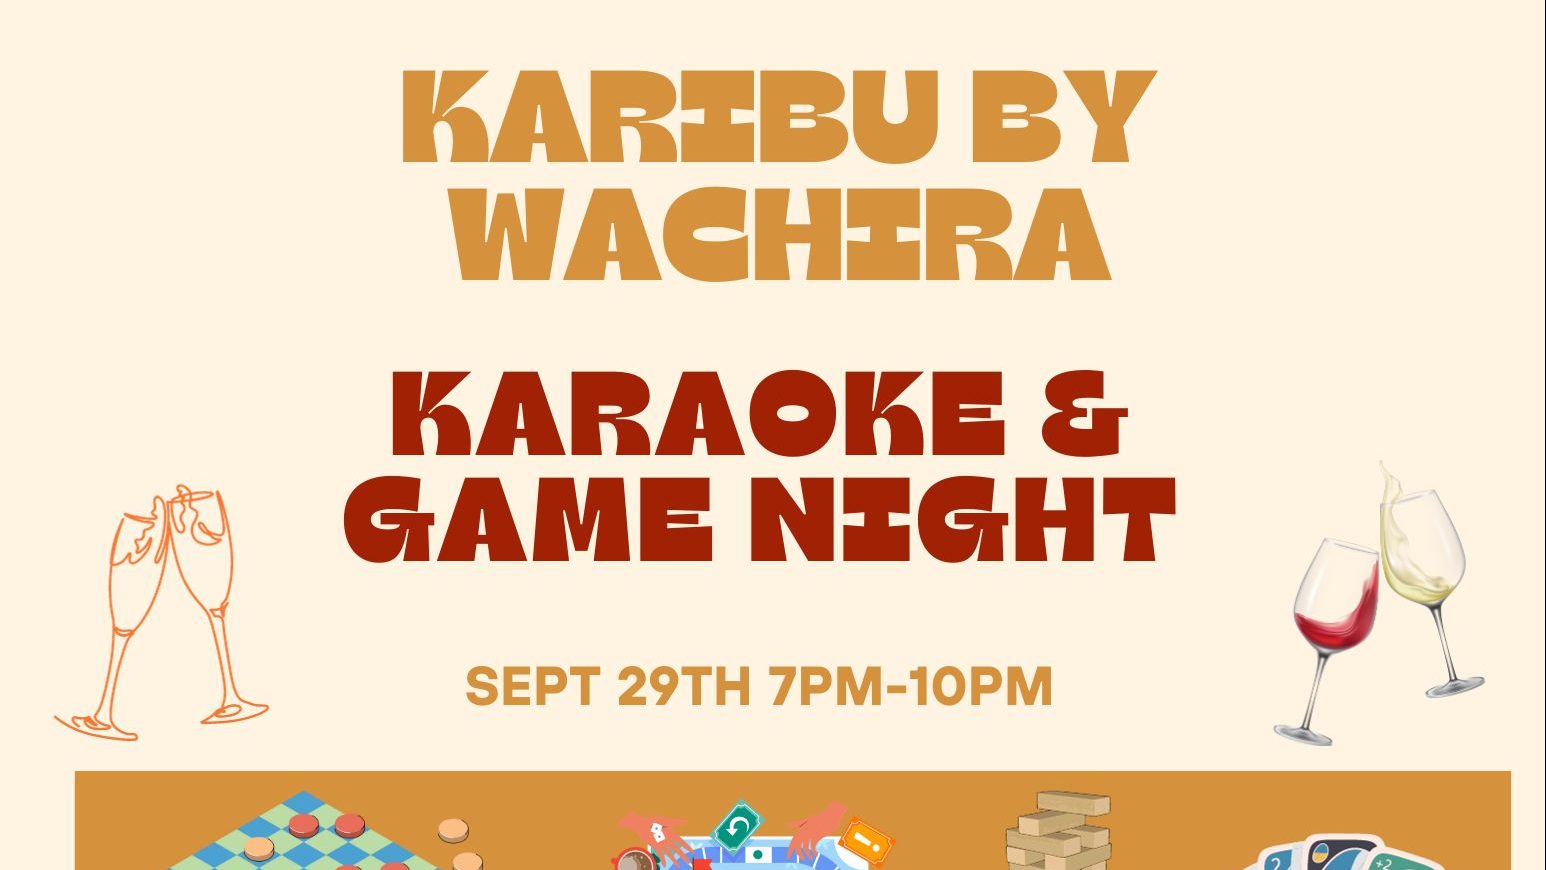 Game on & Sing along: Game & Karaoke Night at Karibu Lounge